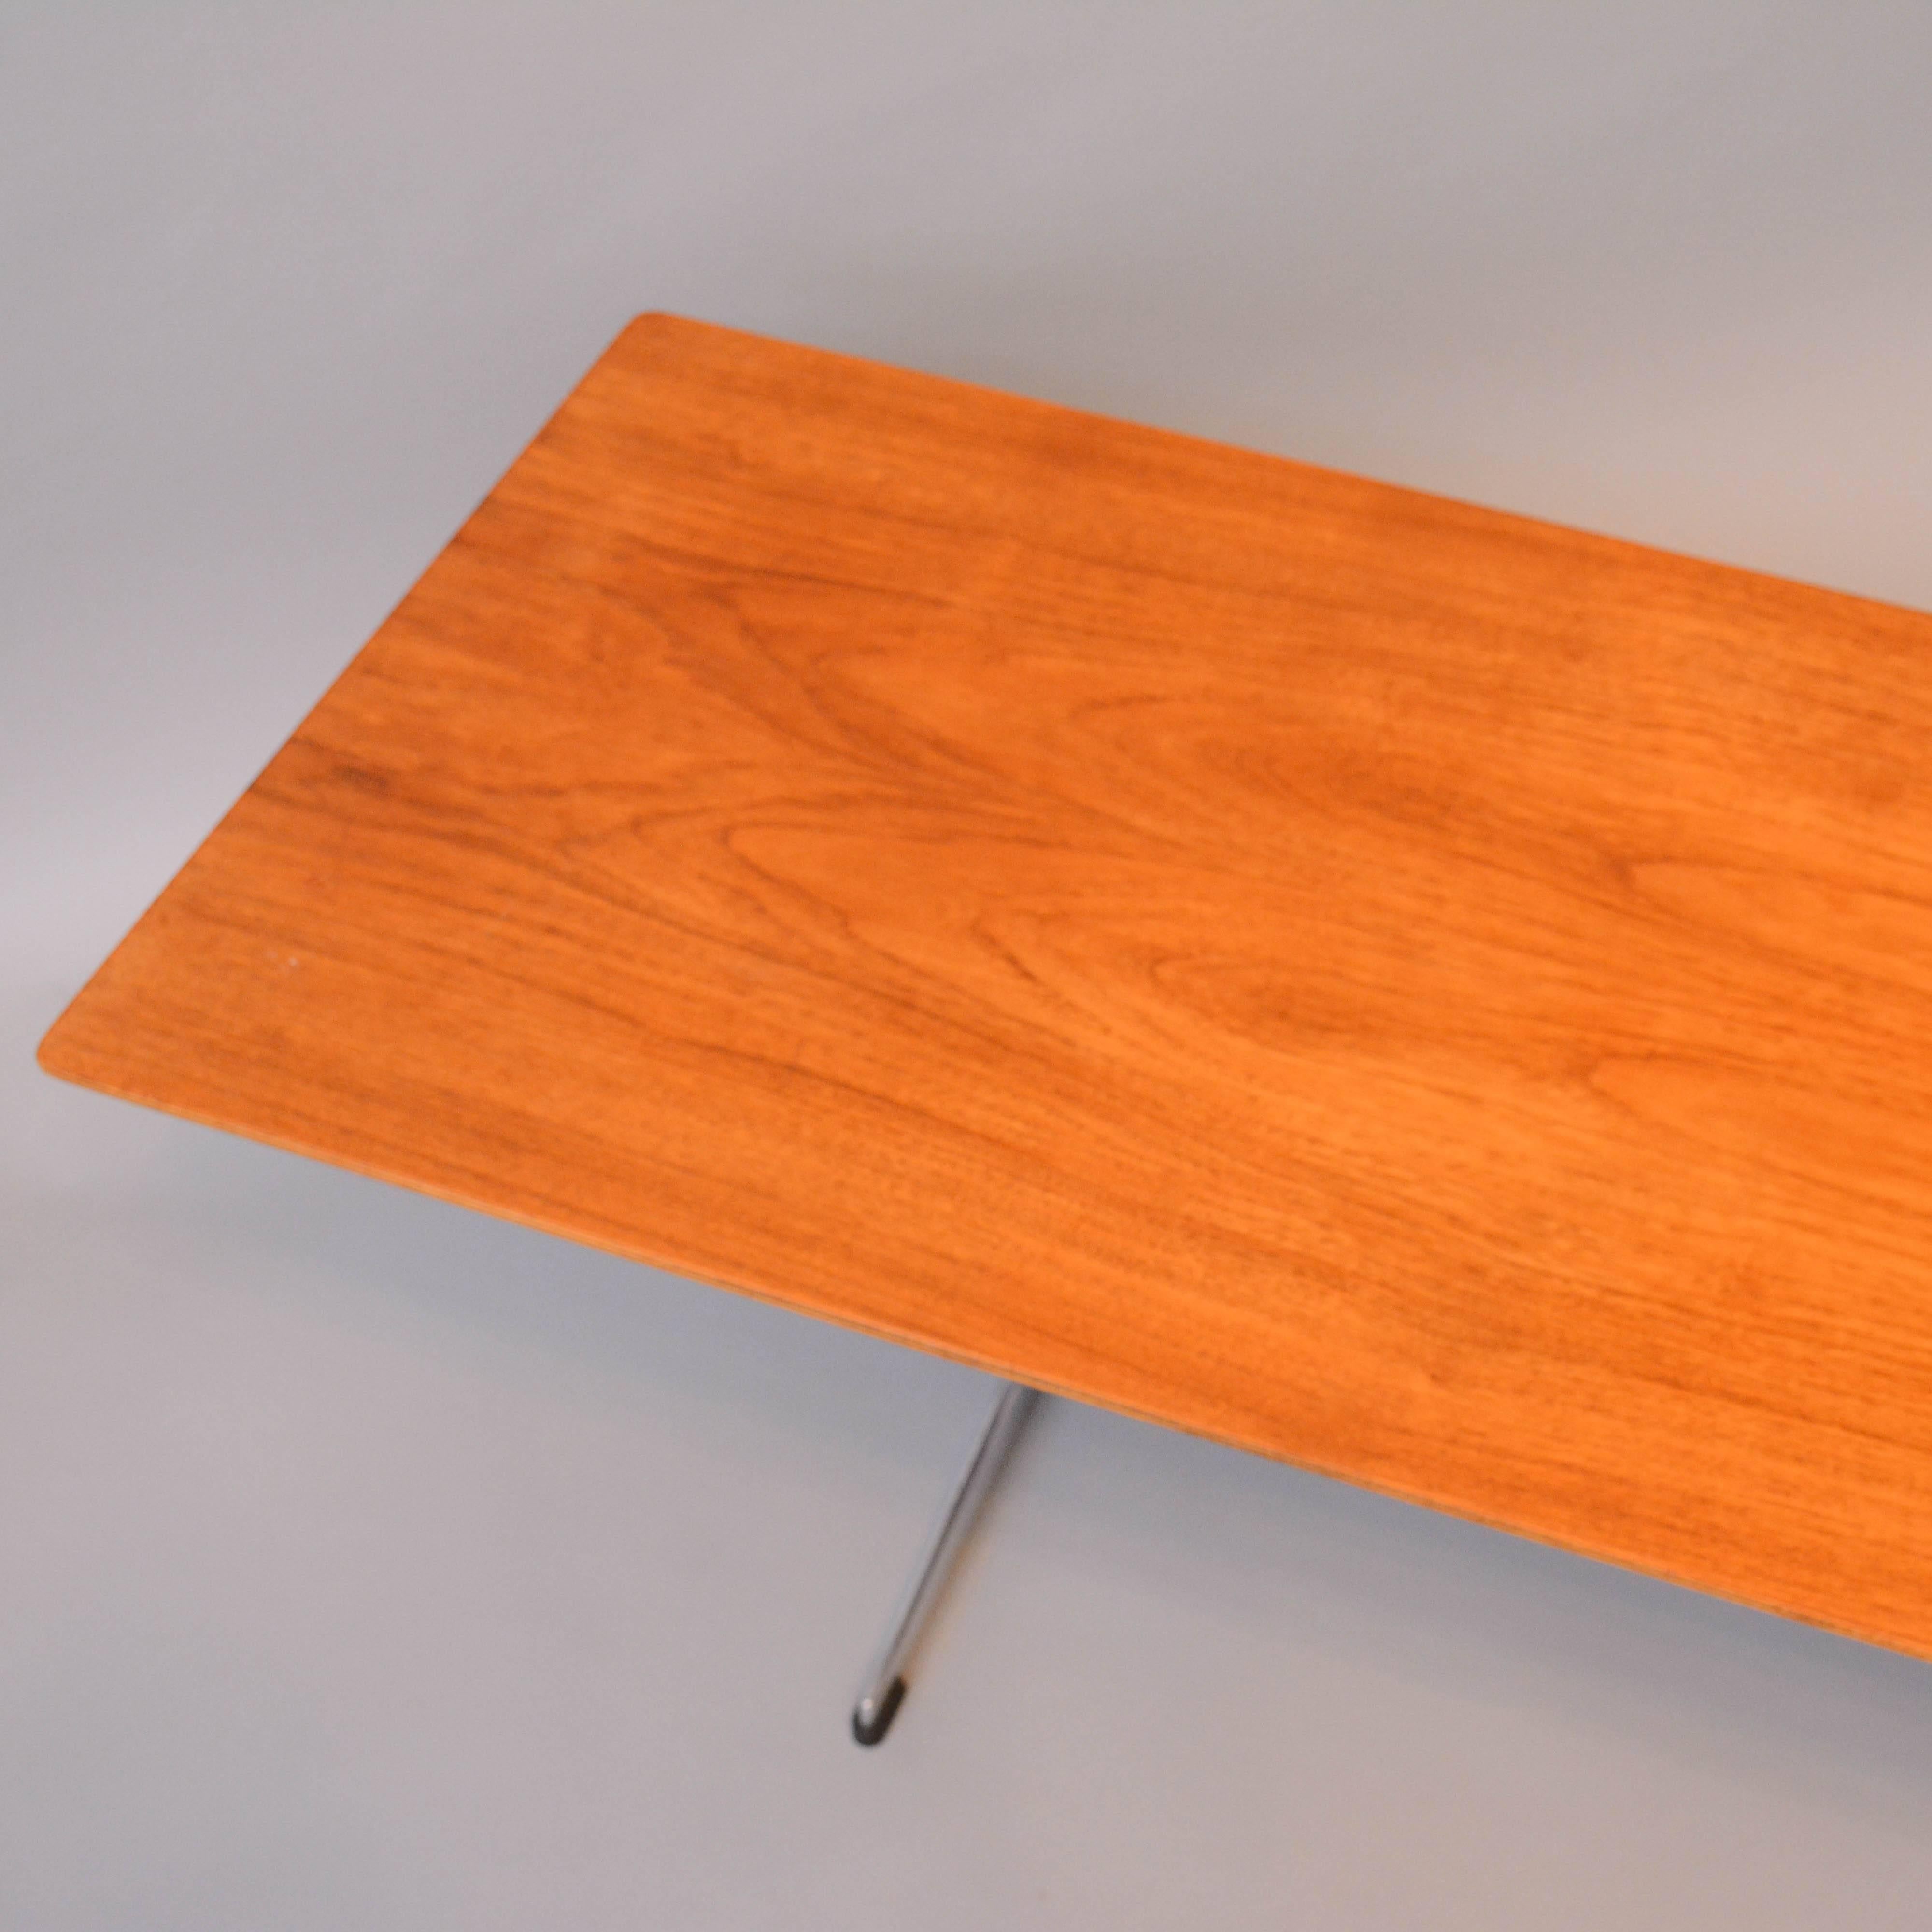 Table FH 3515 by Arne Jacobsen for Fritz Hansen, Denmark 1